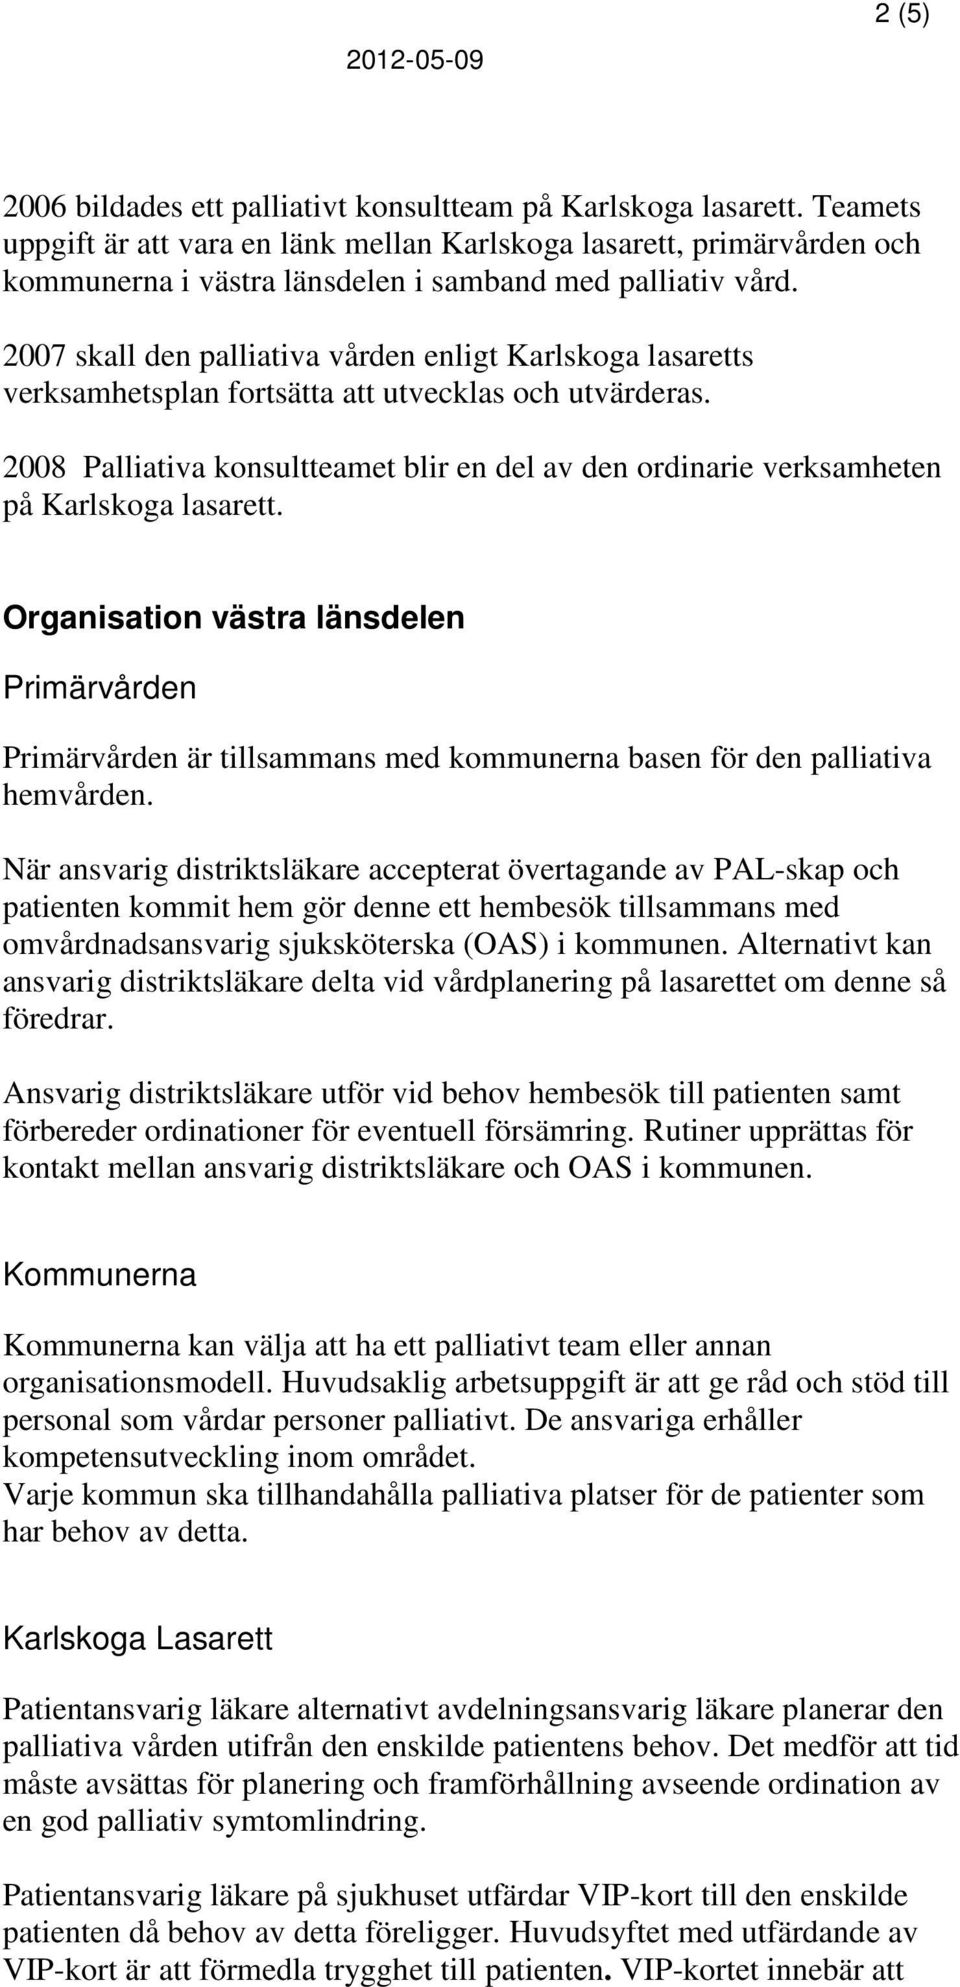 2007 skall den palliativa vården enligt Karlskoga lasaretts verksamhetsplan fortsätta att utvecklas och utvärderas.